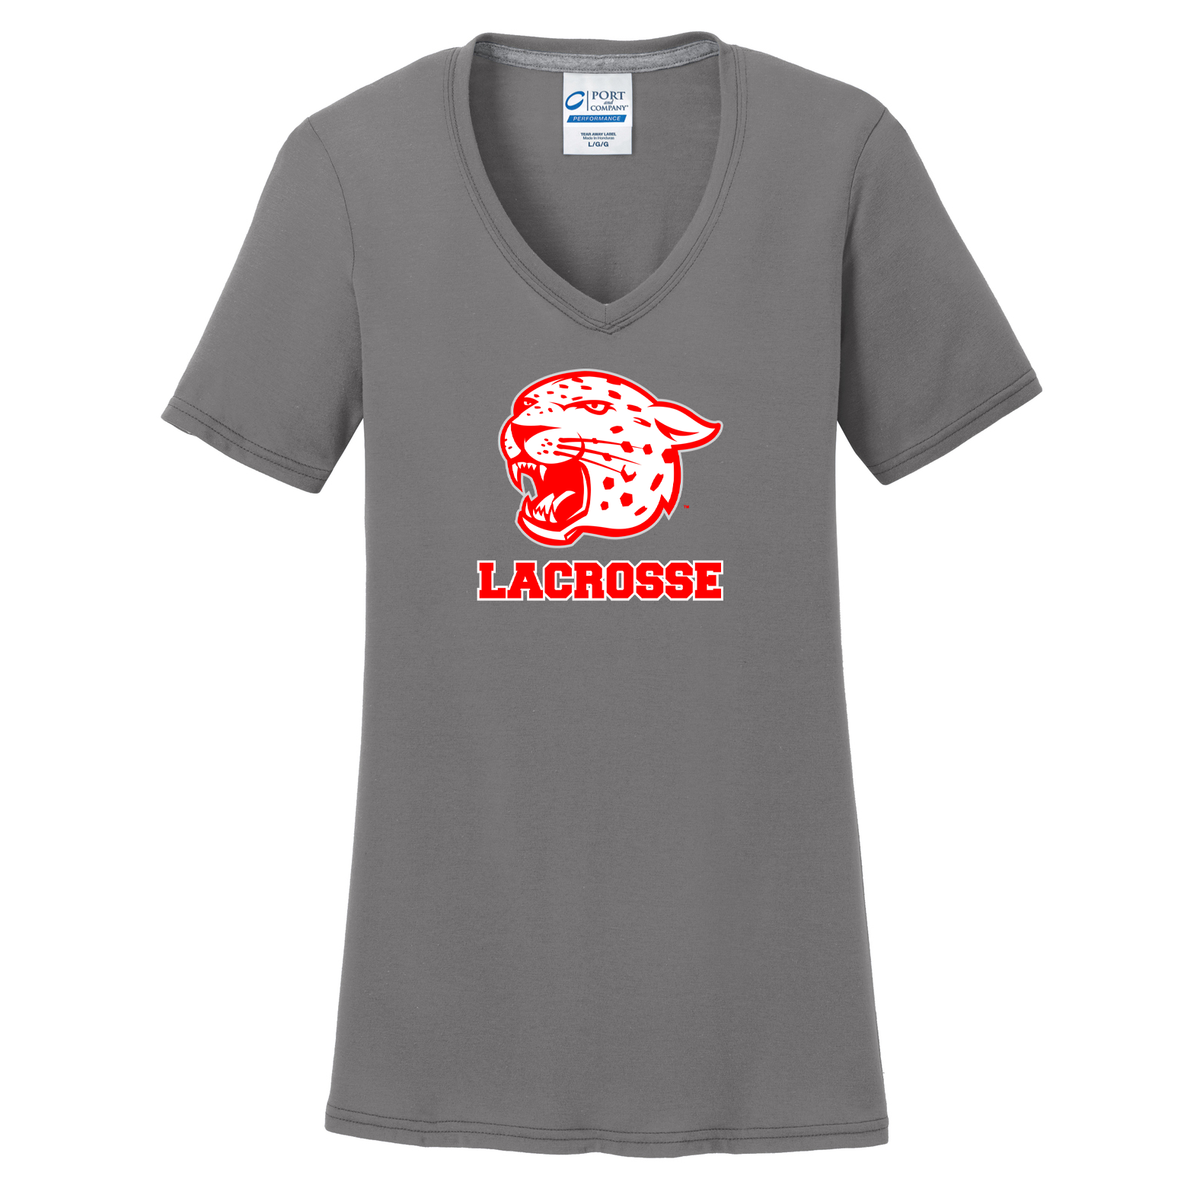 East Lacrosse Women's T-Shirt